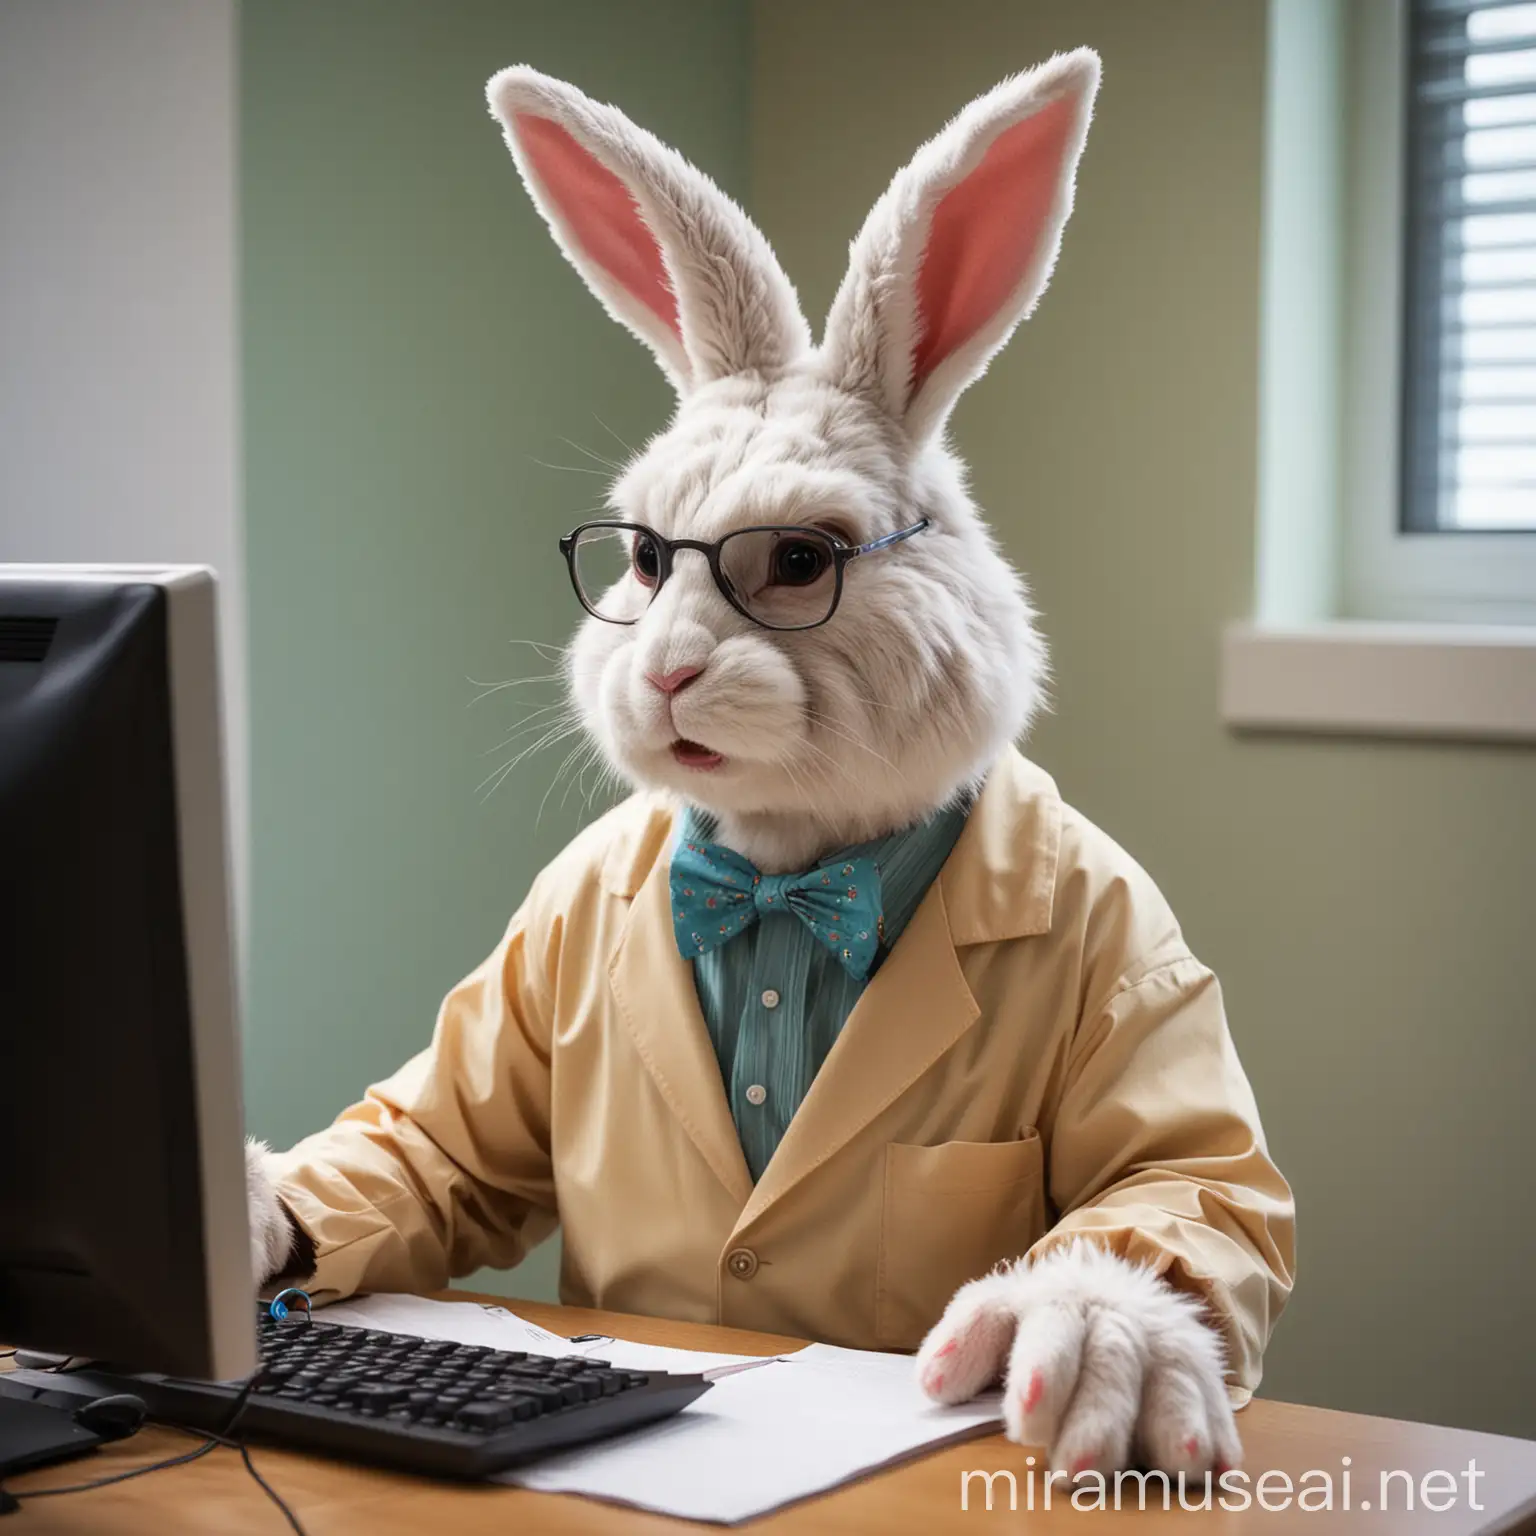 Easter Bunny Computer Scientist in Civil Attire